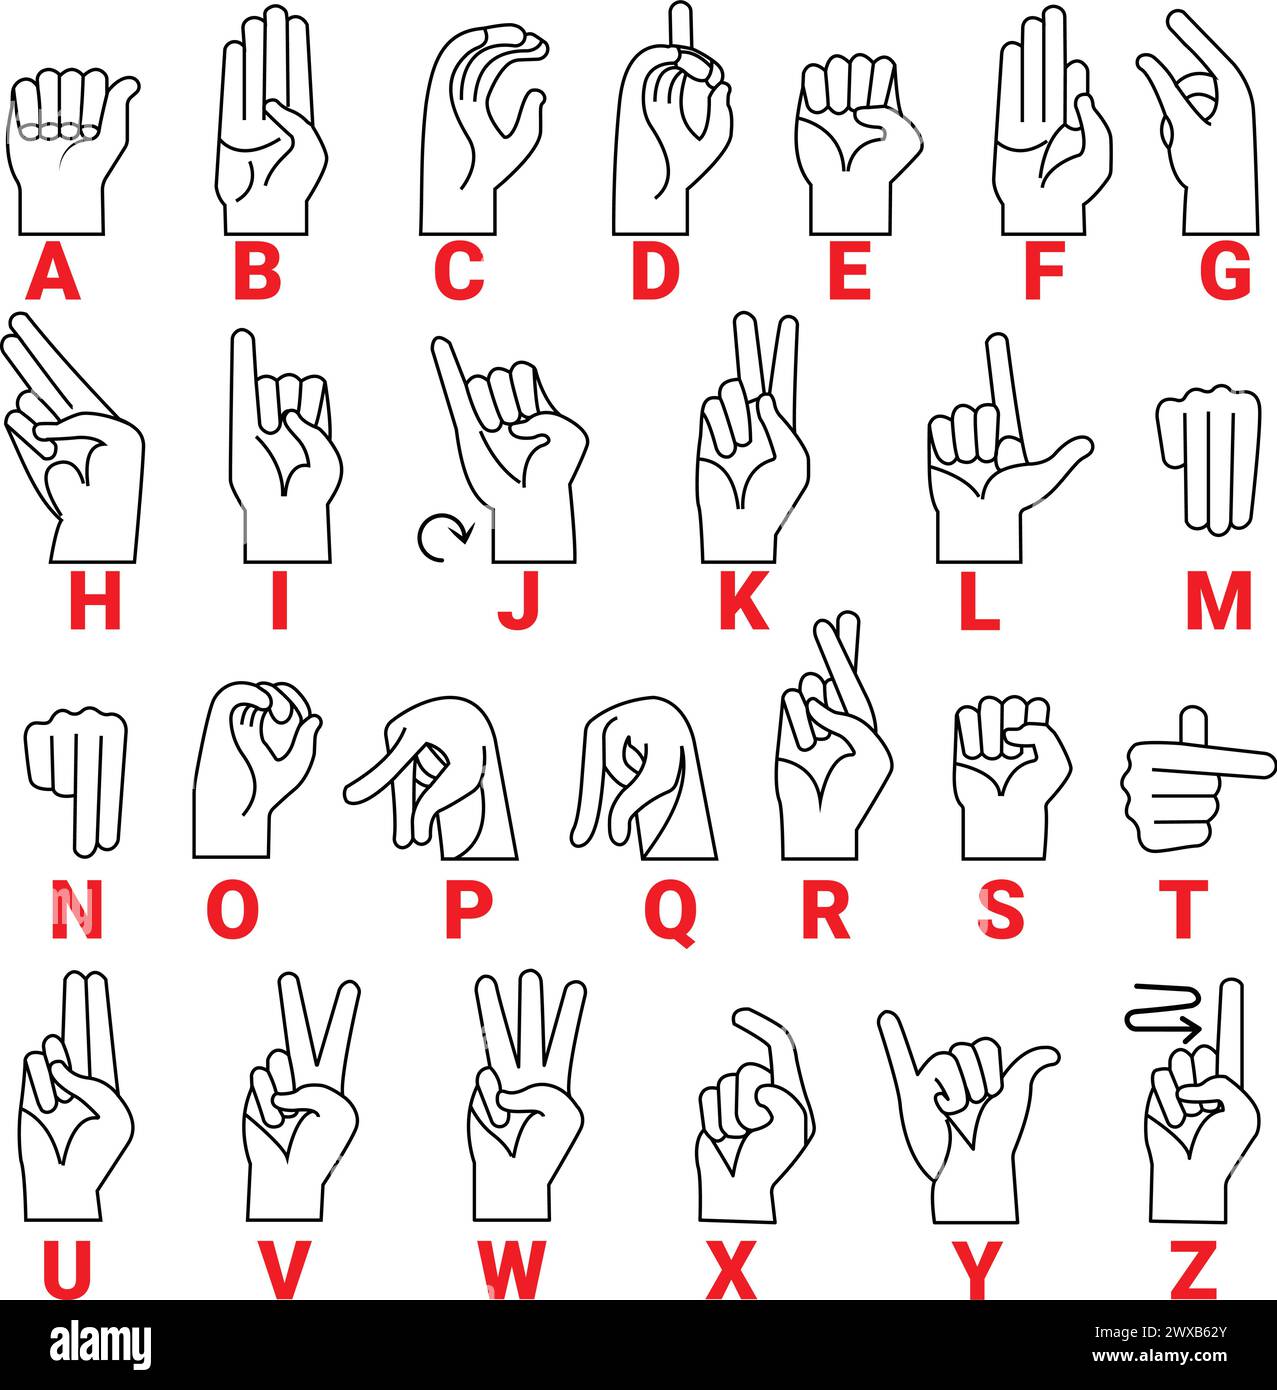 Langage sourd et muet. American sourd-muet geste de main lettres alphabet, ASL Alphabet American Sign Language Numbers lettres Illustration de Vecteur